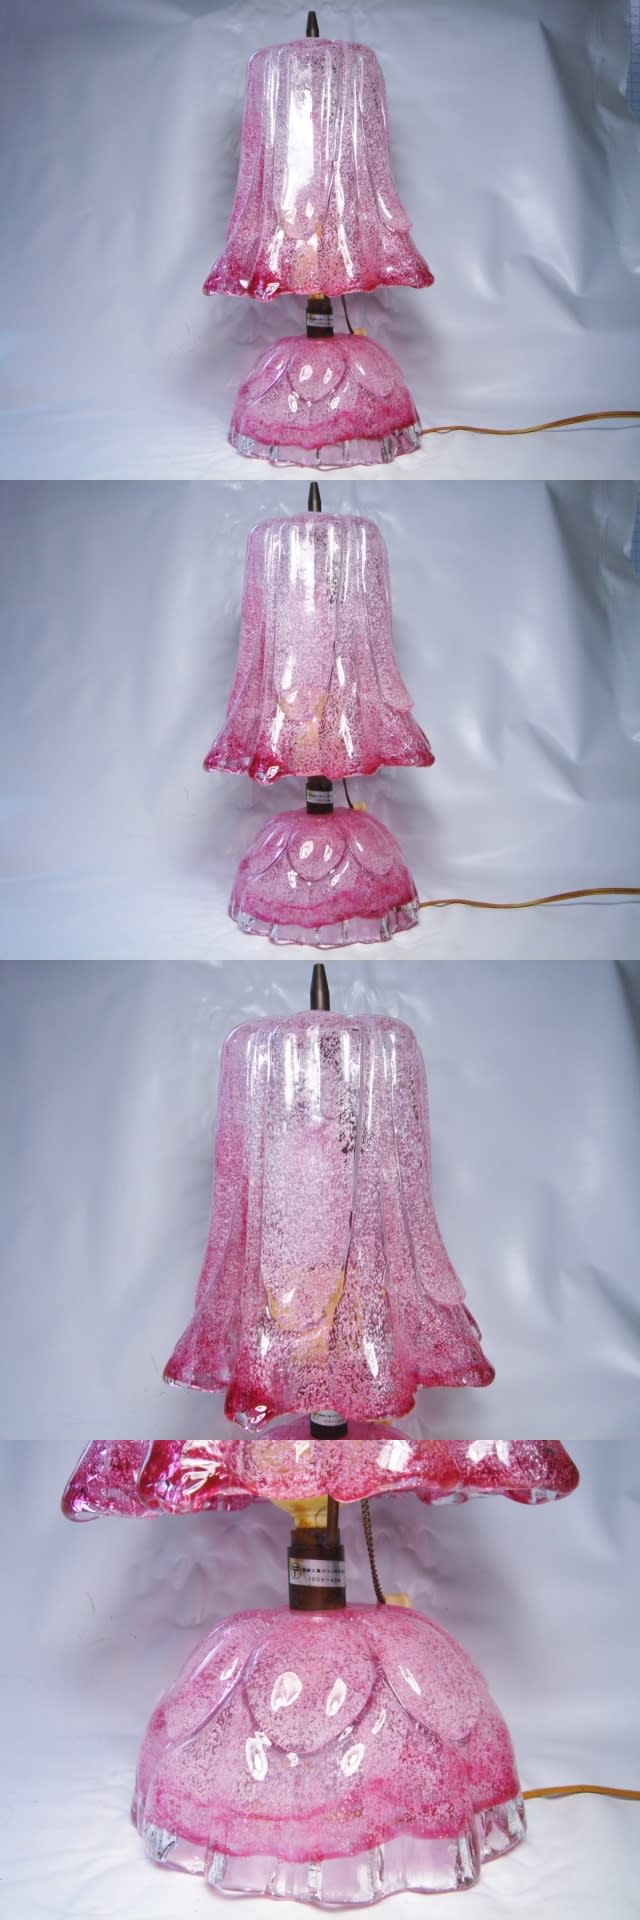 岩田ガラス スタンドライト 照明 ピンク 硝子工芸品